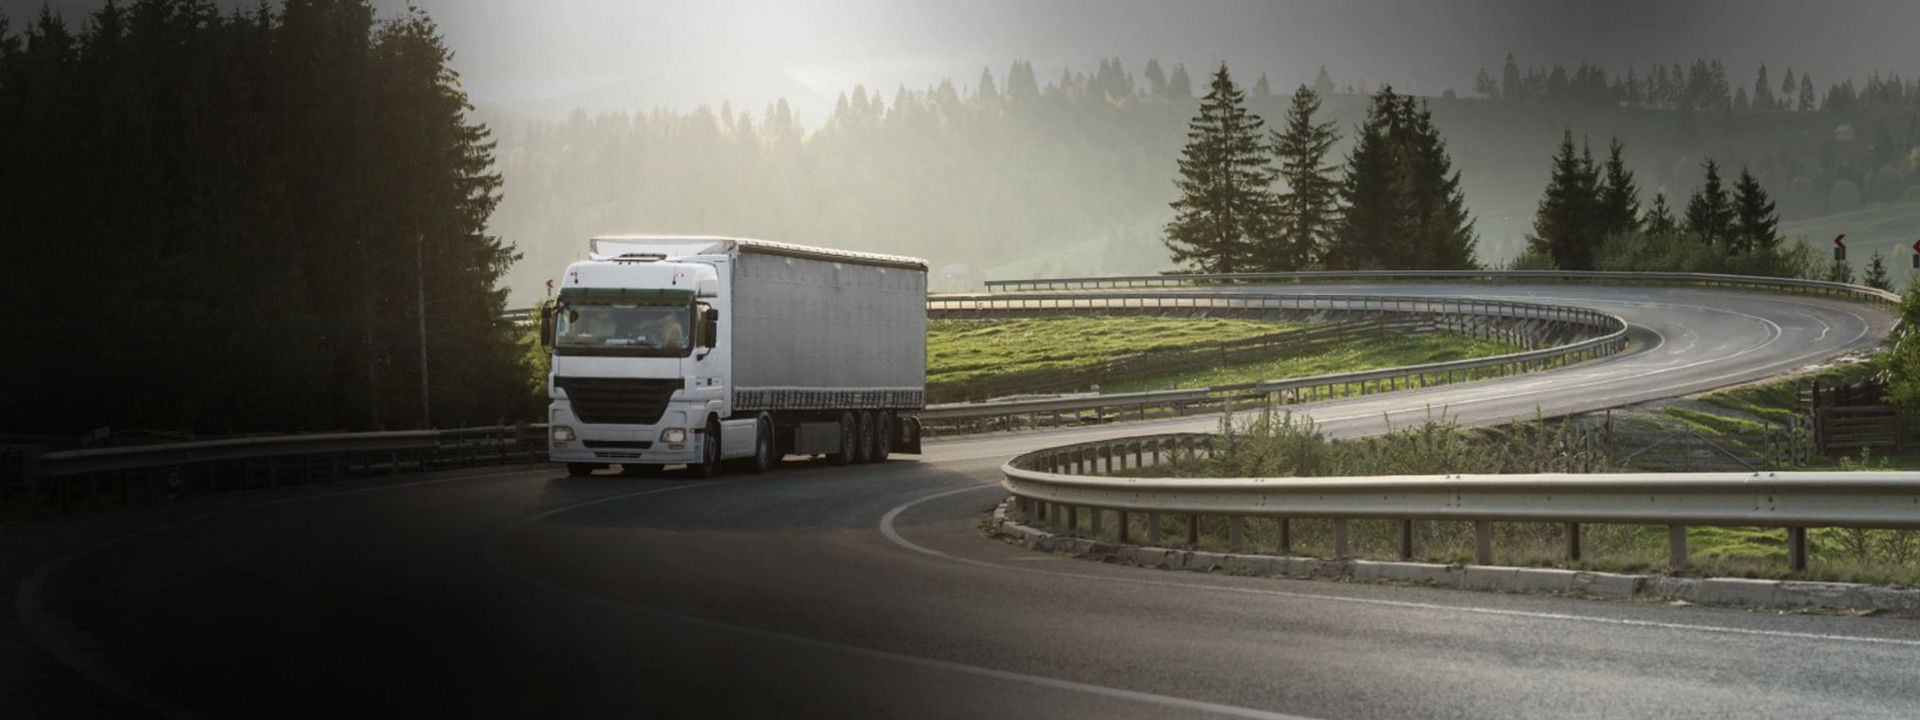 Obrázek ukazuje nákladní automobil jedoucí po regionální silnici s víceúčelovými pneumatikami Bridgestone.